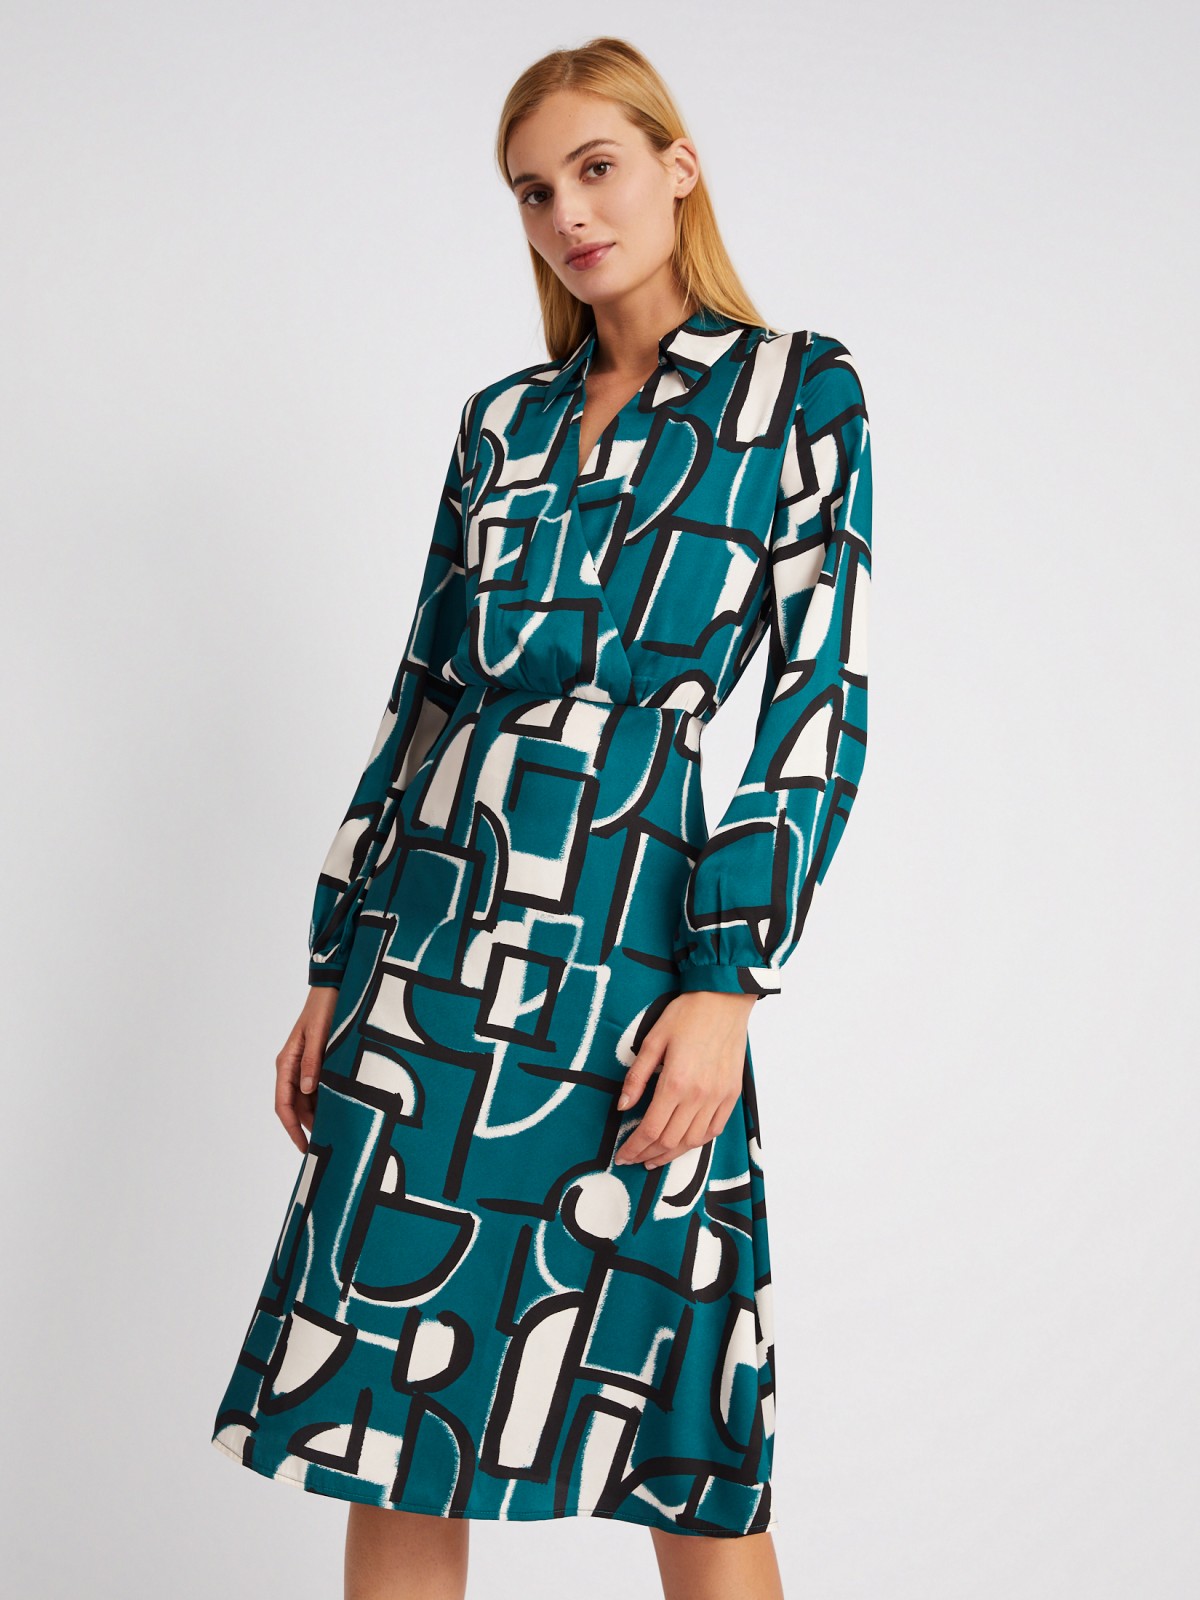 Атласное платье-рубашка длины миди с принтом zolla 024118262251, цвет темно-зеленый, размер XS - фото 1